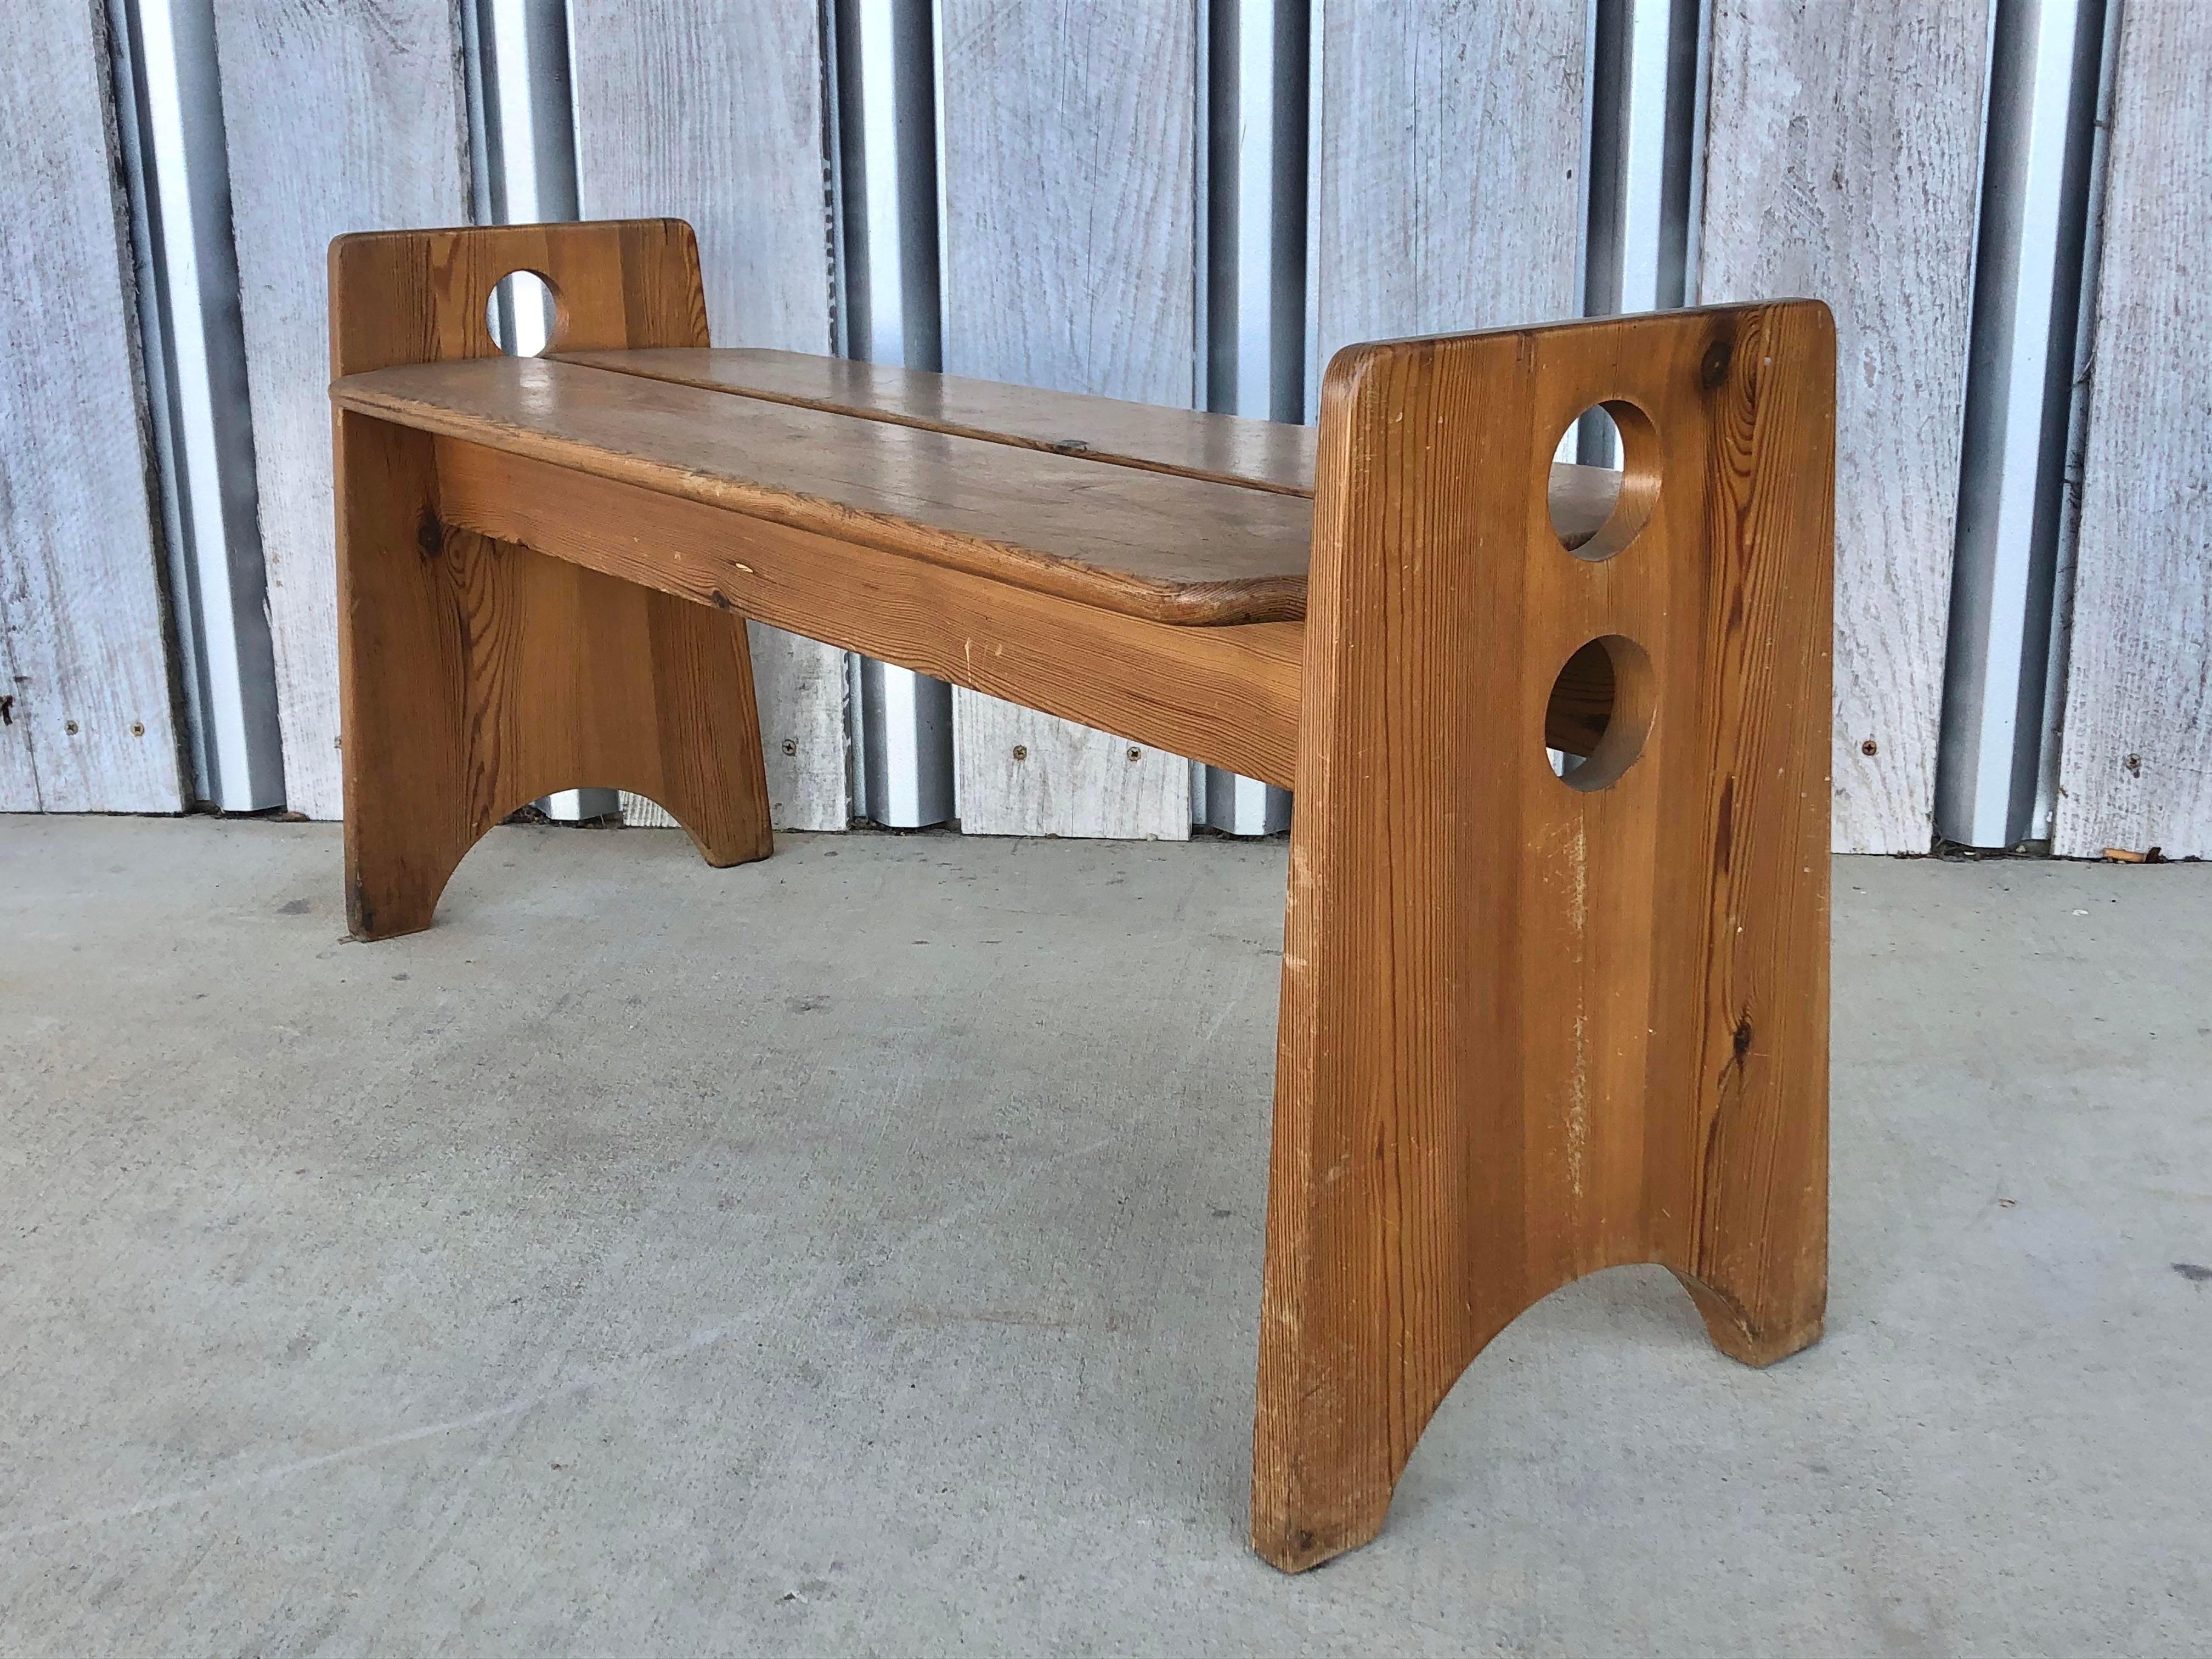 long banc en pin des années 1970, conçu par Gilbert Marklund. Deux bancs et une table assortie sont disponibles.